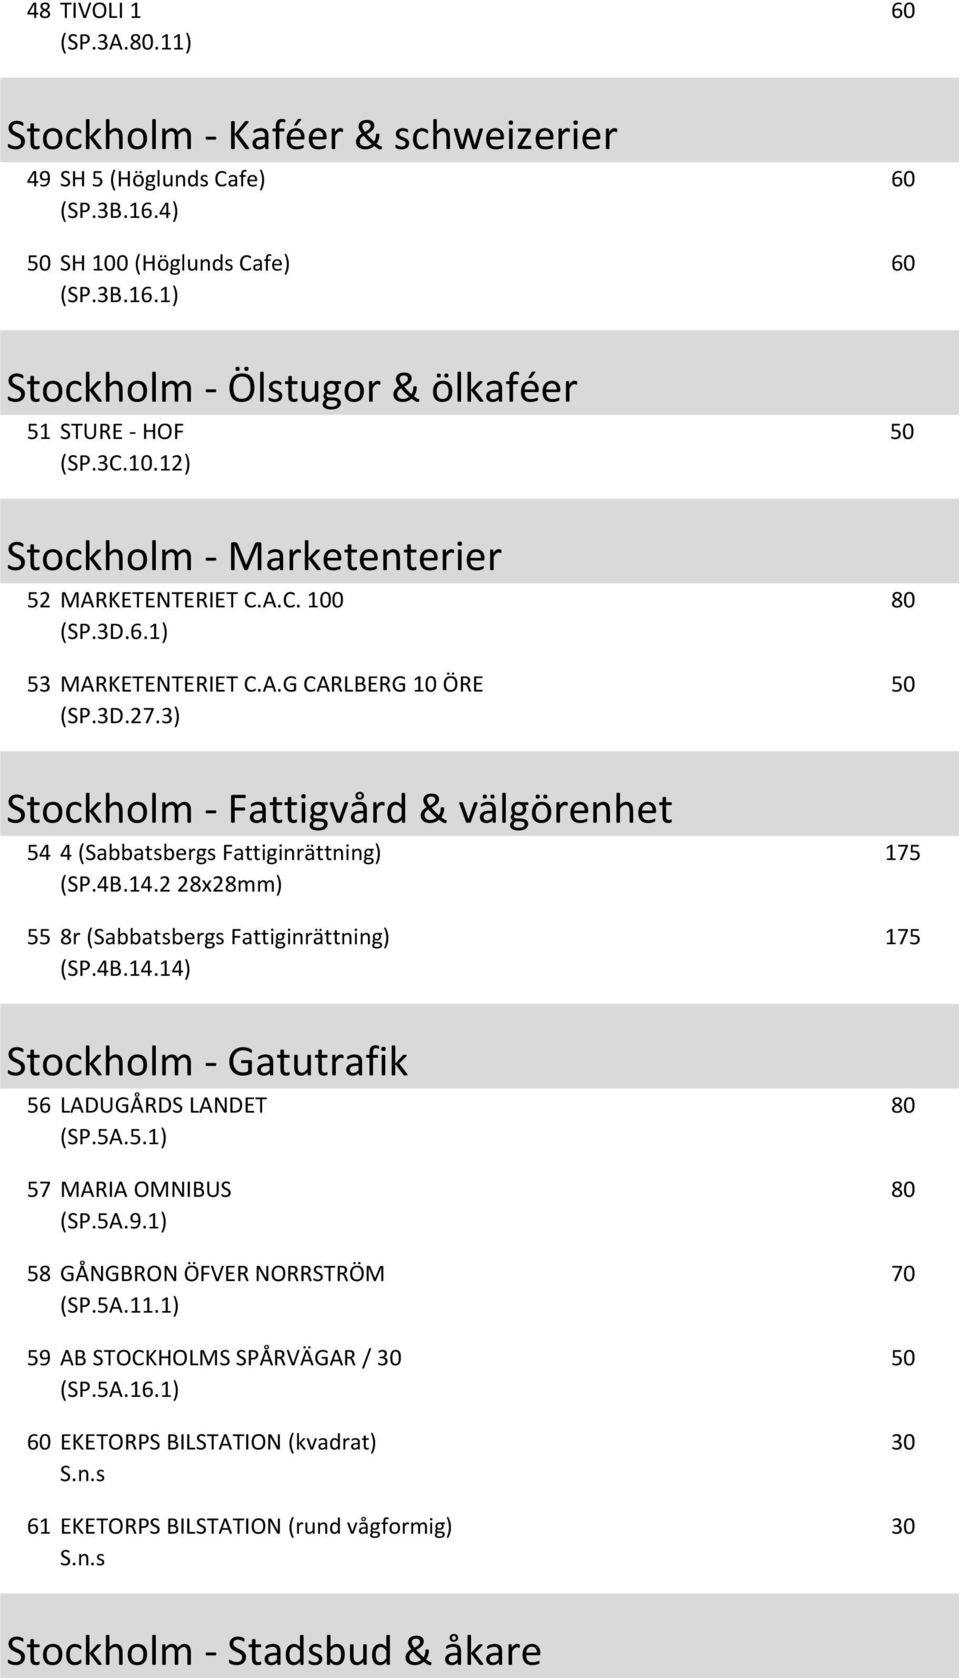 3) Stockholm - Fattigvård & välgörenhet 54 4 (Sabbatsbergs Fattiginrättning) (SP.4B.14.2 28x28mm) 55 8r (Sabbatsbergs Fattiginrättning) (SP.4B.14.14) 175 175 Stockholm - Gatutrafik 56 LADUGÅRDS LANDET (SP.